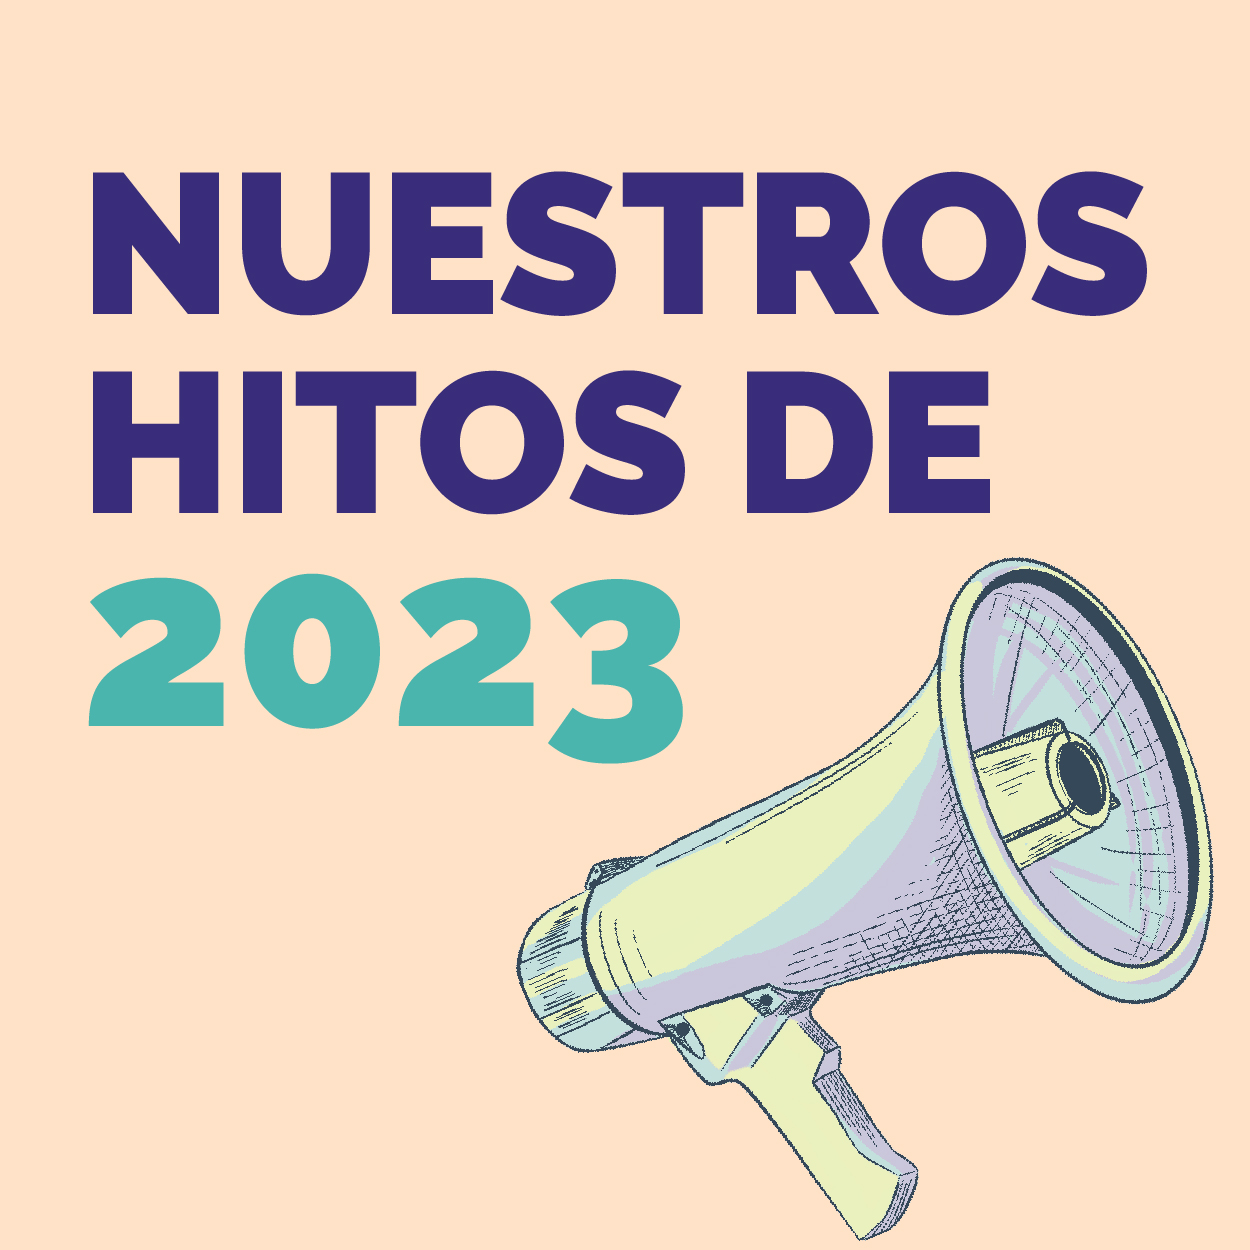 NUESTROS HITOS DE 2023